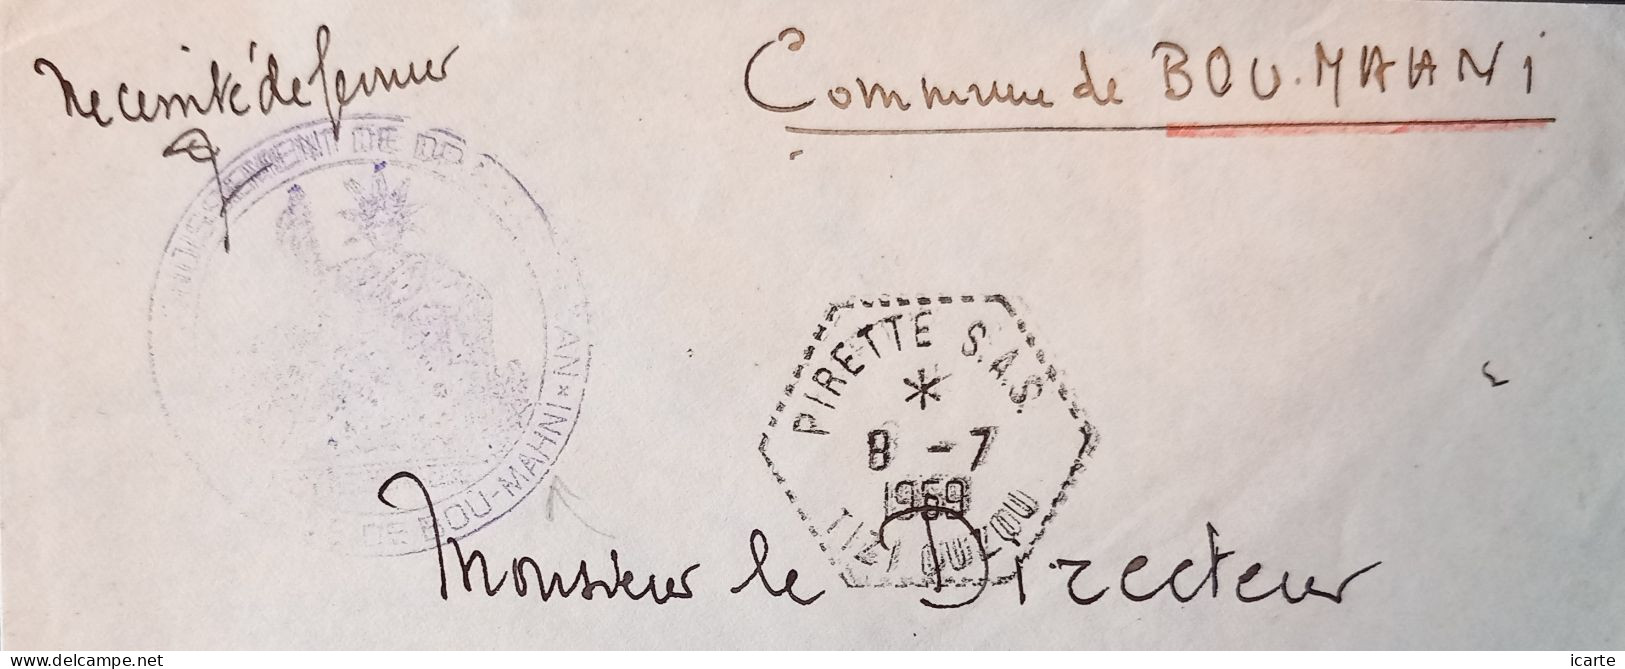 Oblitération Hexagonale Tiretée PIRETTE S.A.S. Et Cachet Bou-Mahni Sur Lettre Du 8-7-1959 - Guerra D'Algeria